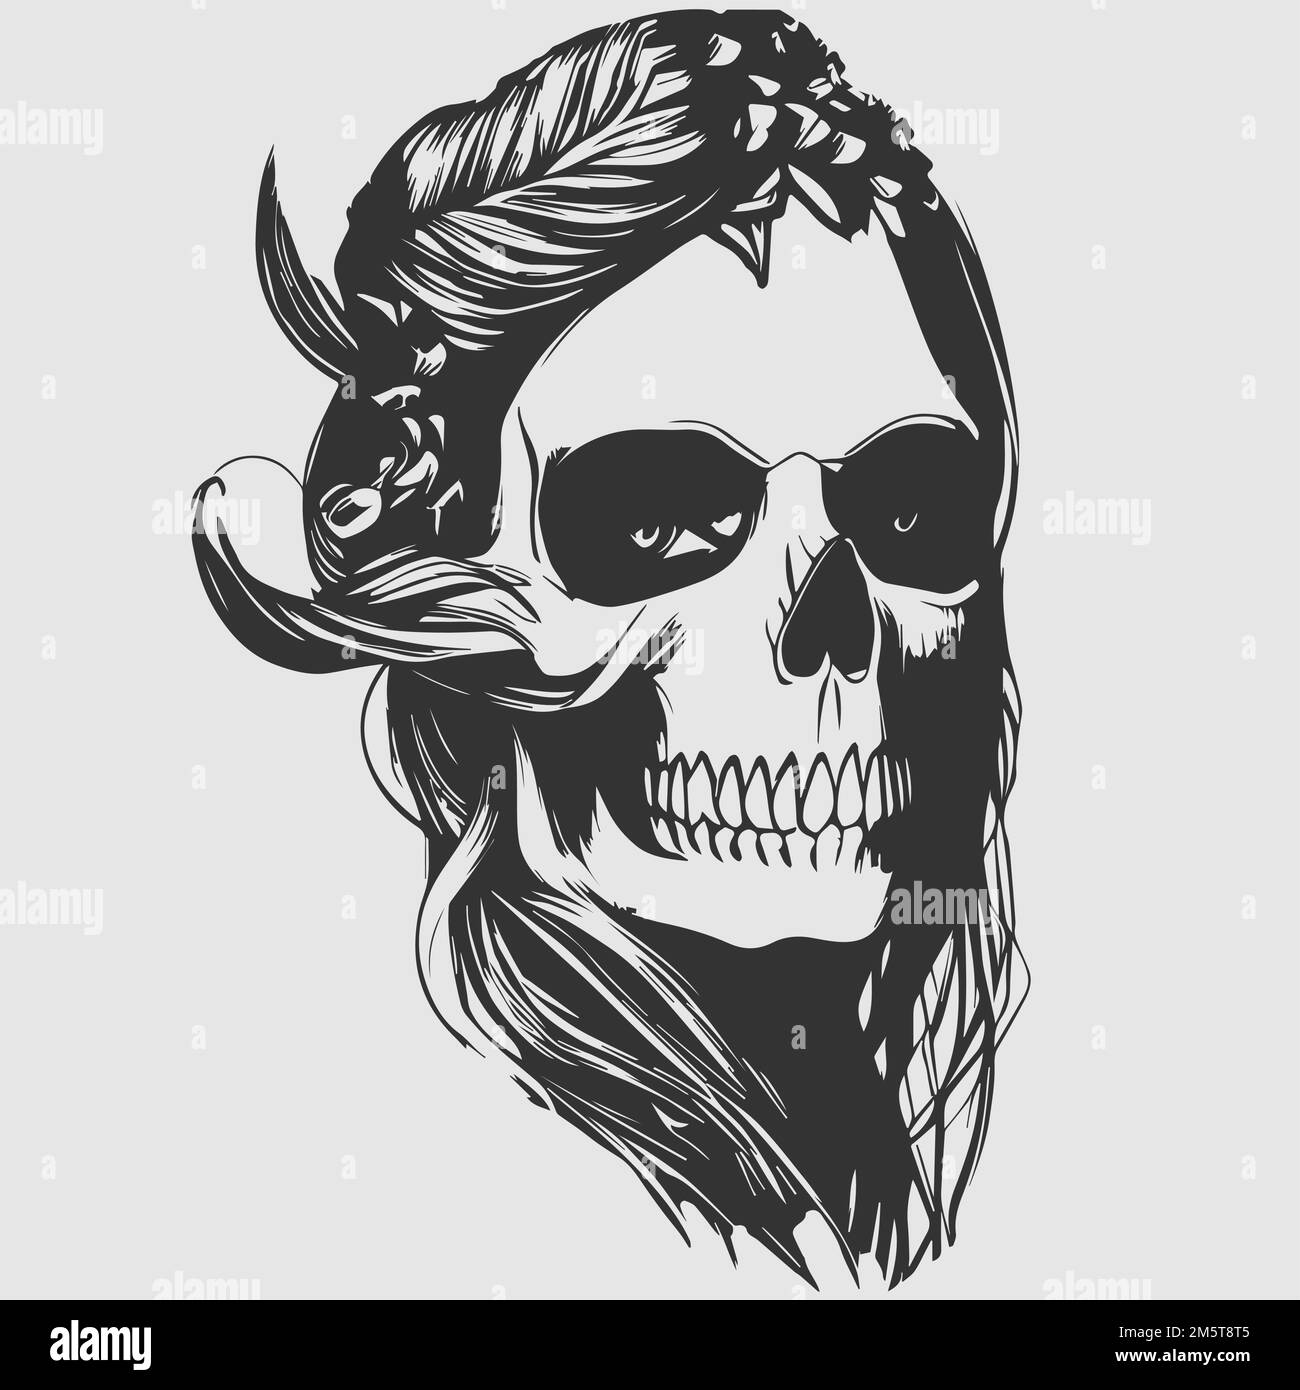 Boar Skull on Behance | Skull drawing, Animal skulls, Animal tattoos